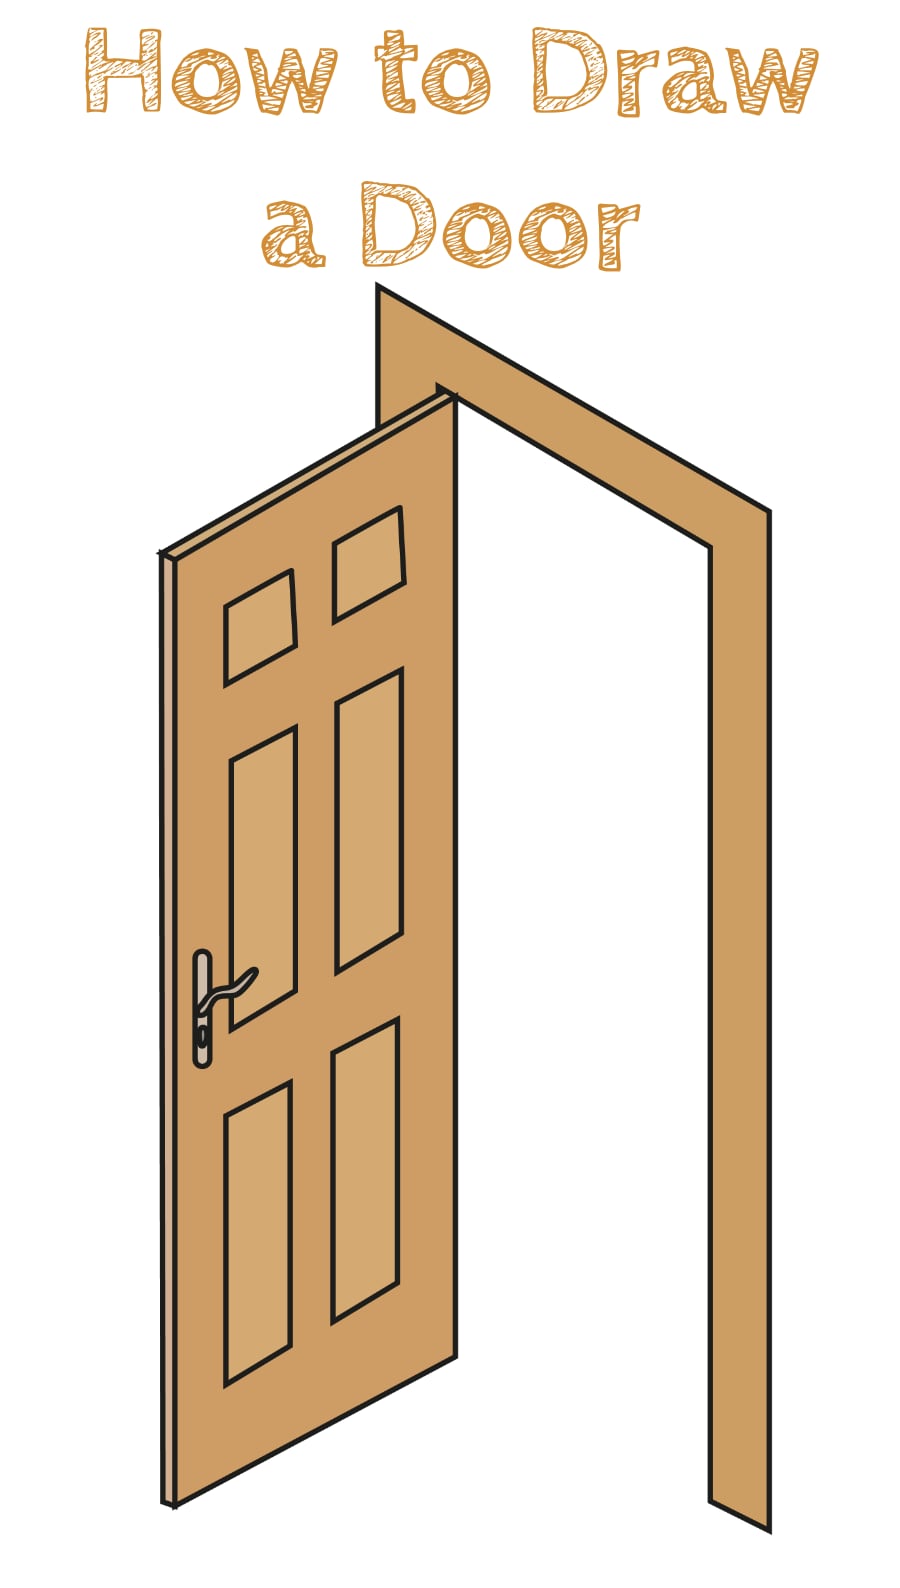 How to Draw an Easy Door